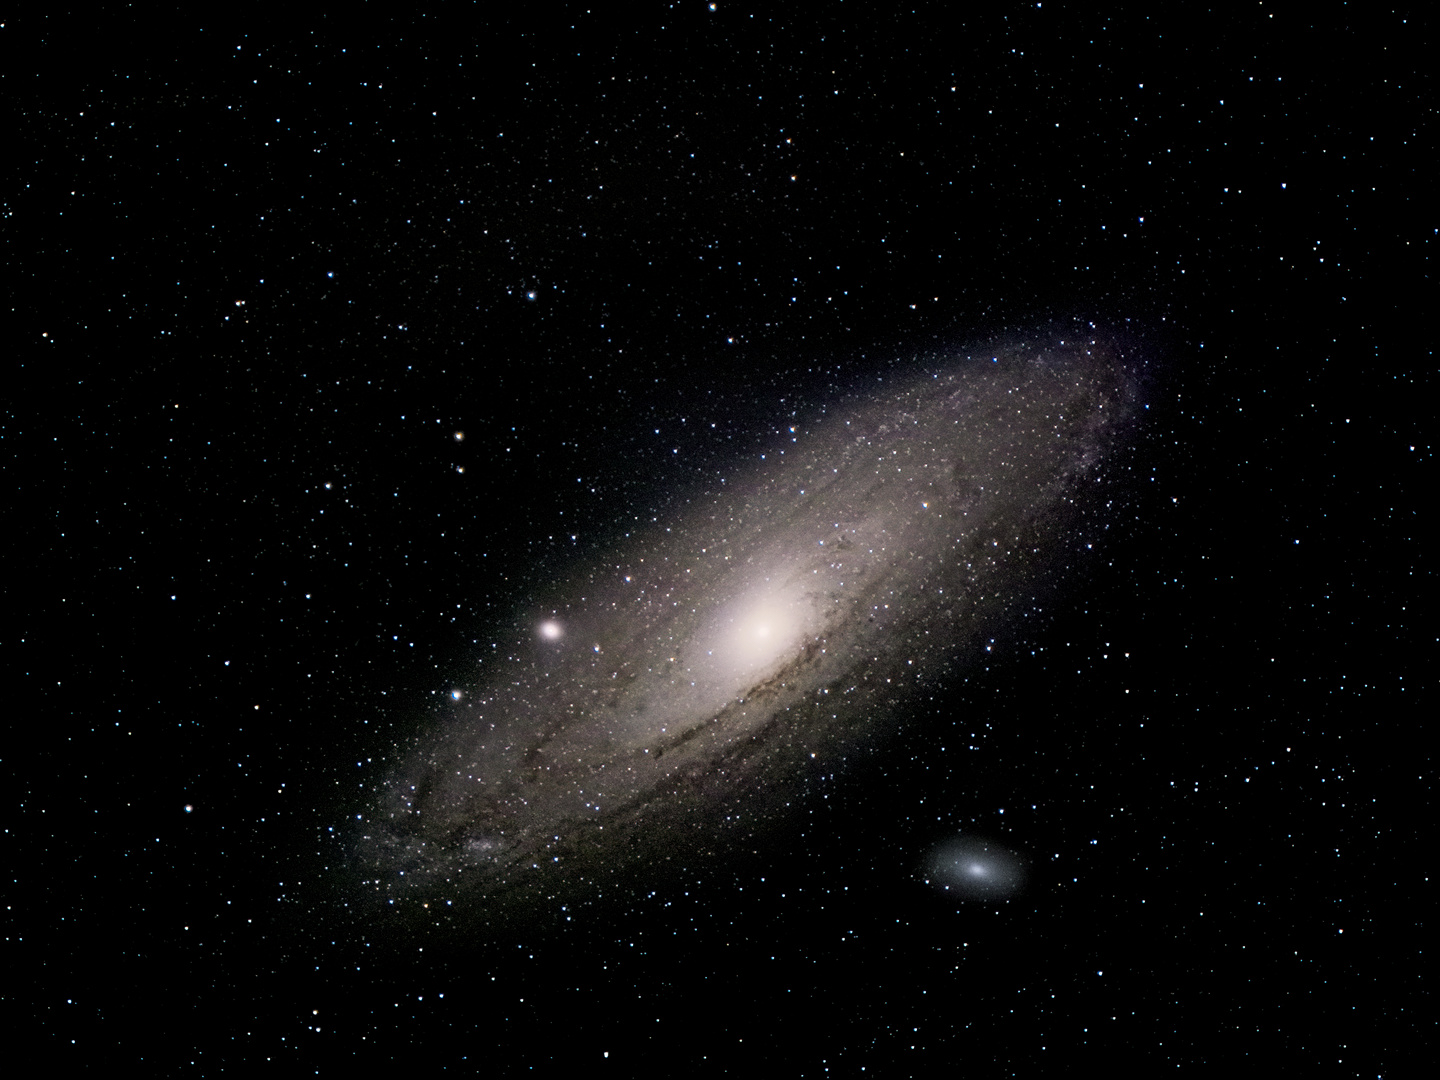 Andromedagalaxie (M 31) - Erste Schritte Richtung Unendlichkeit